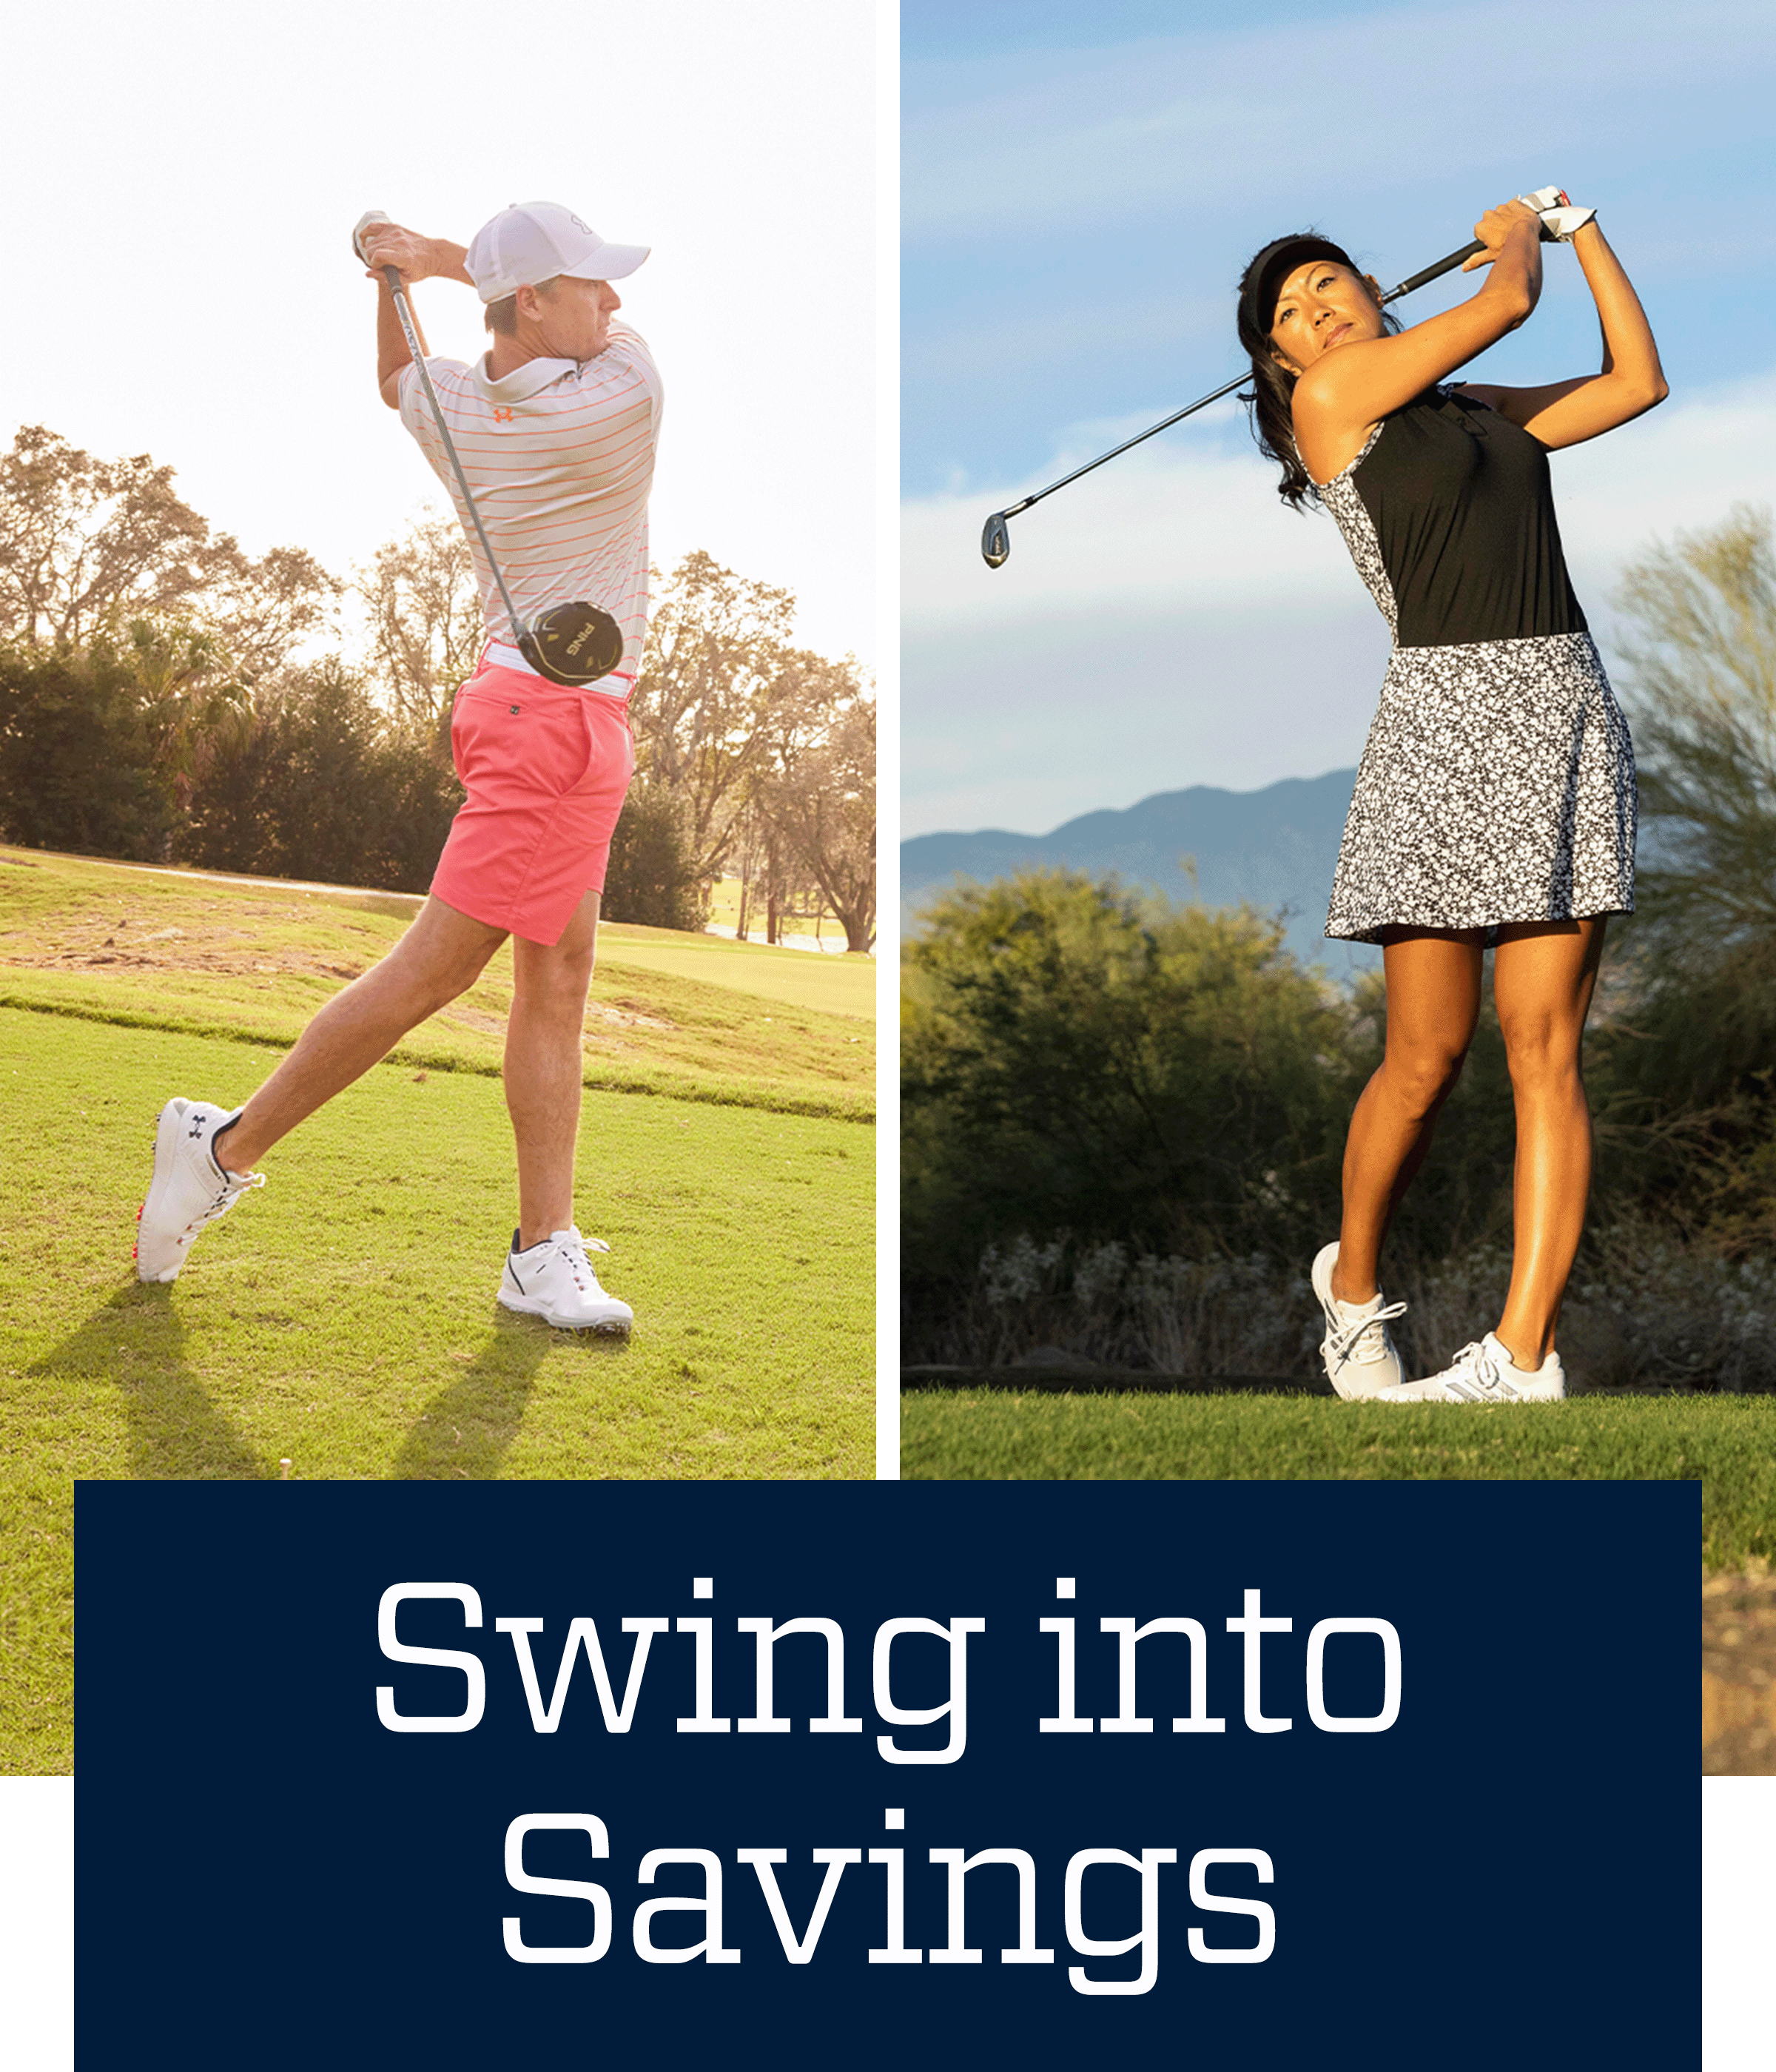 Swing into savings.